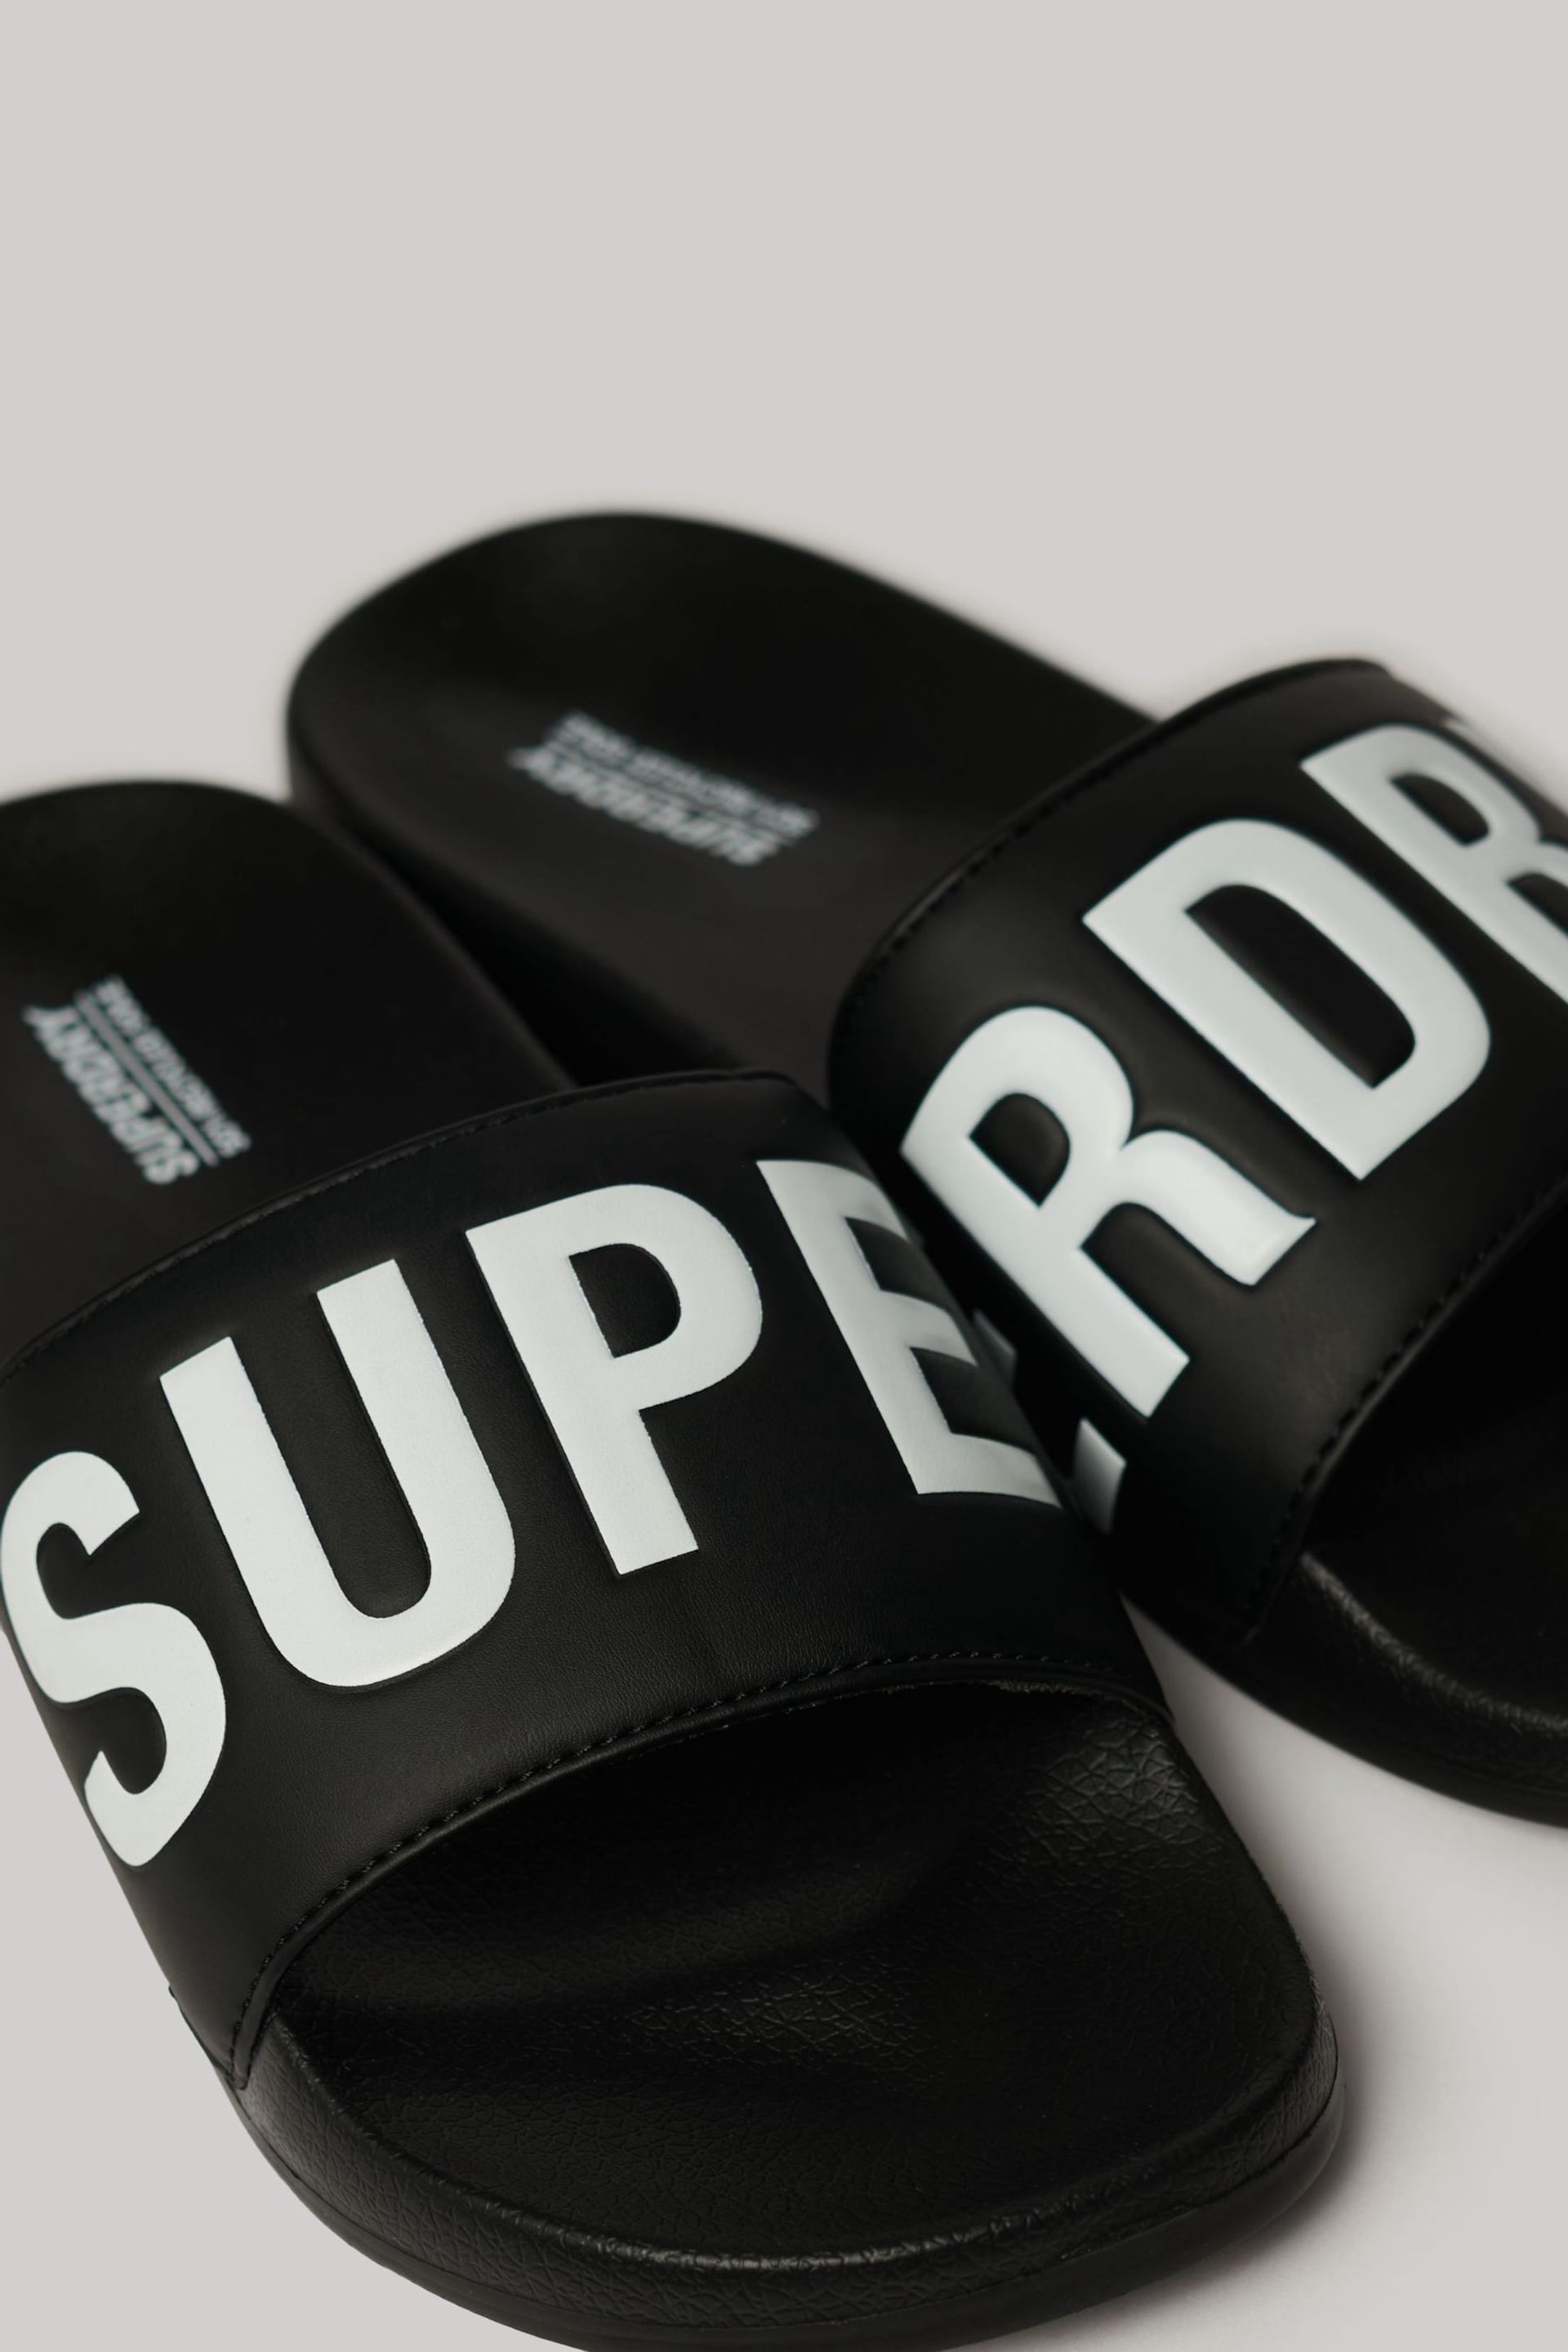 Superdry Black Core Vegan Pool Sliders - Image 4 of 5